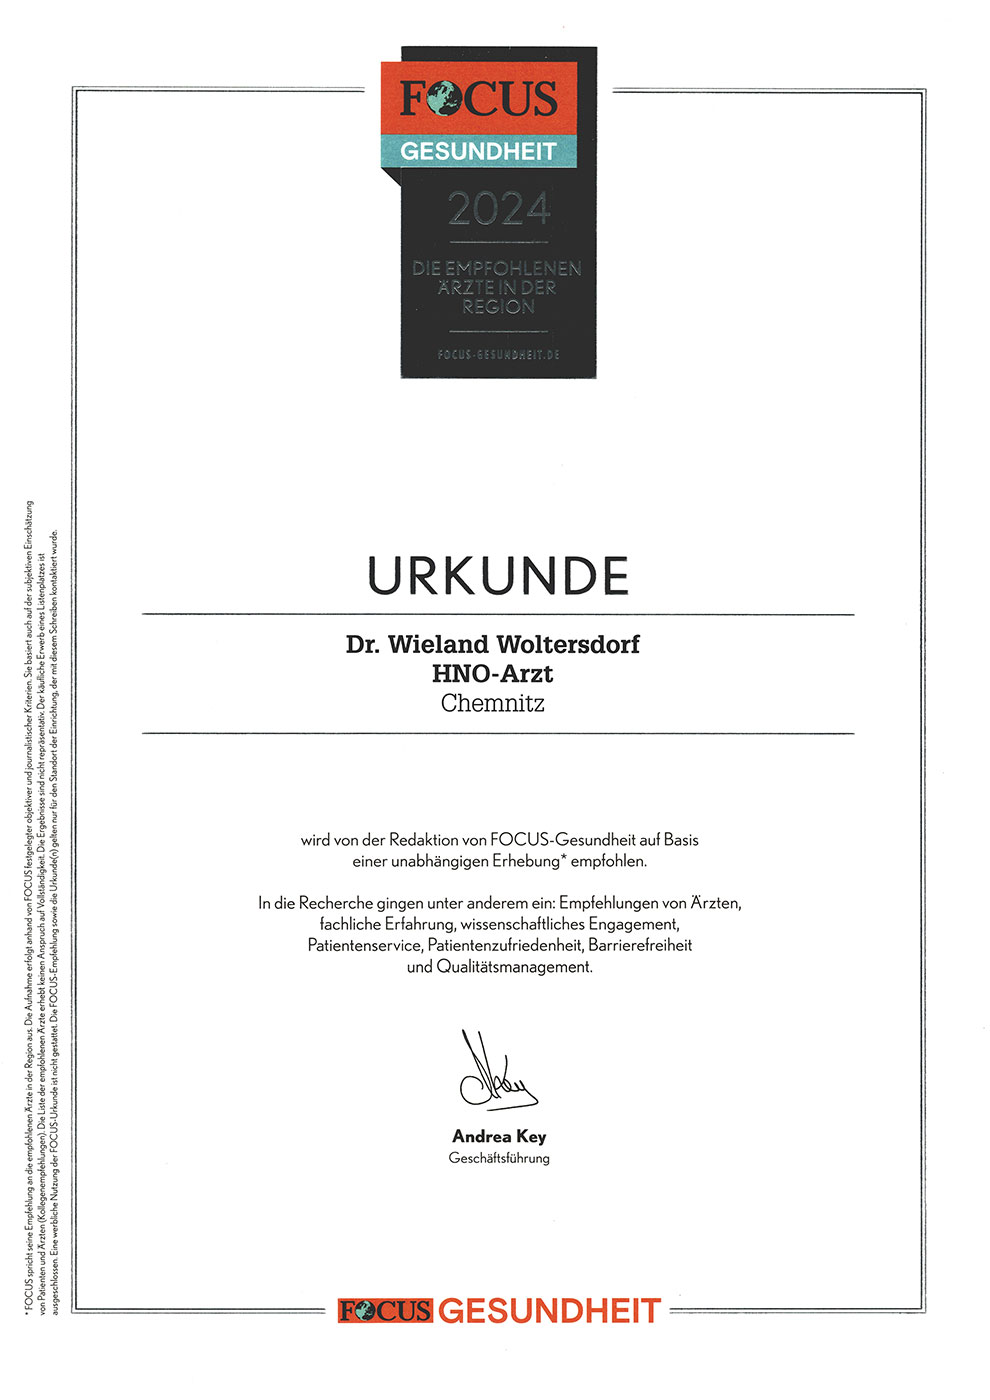 2024 von FOCUS-Gesundheit empfohlen: HNO-Arzt Dr. Wieland Woltersdorf, Chemnitz